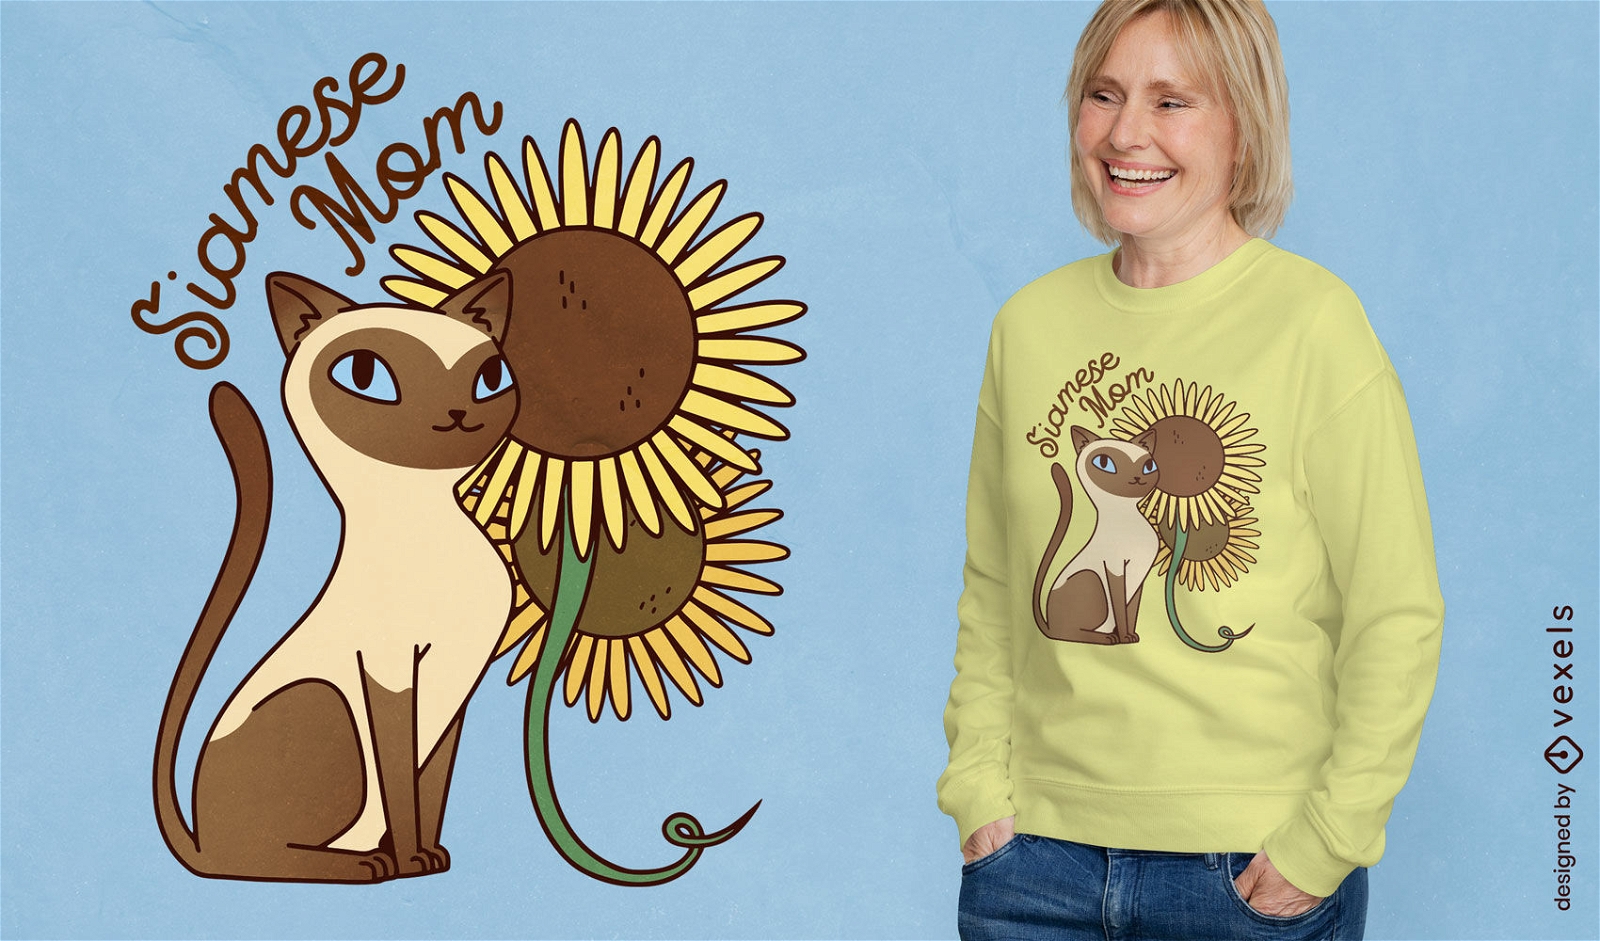 Mutter-Sonnenblumen-T-Shirt Design der siamesischen Katze